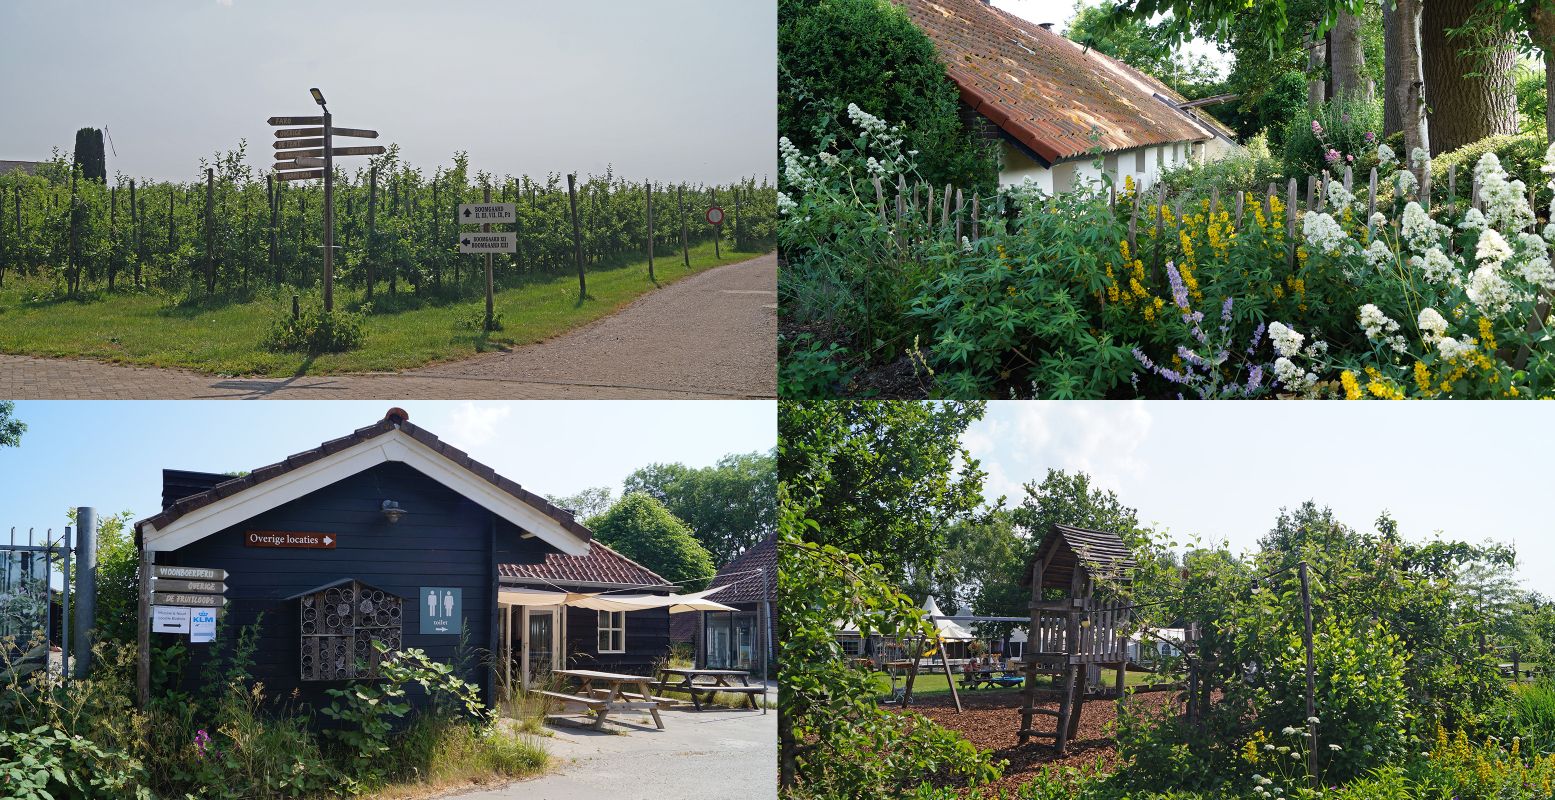 Onderweg maken we een tussenstop het biologische fruitbedrijf De Olmenhorst. Foto: DagjeWeg.NL